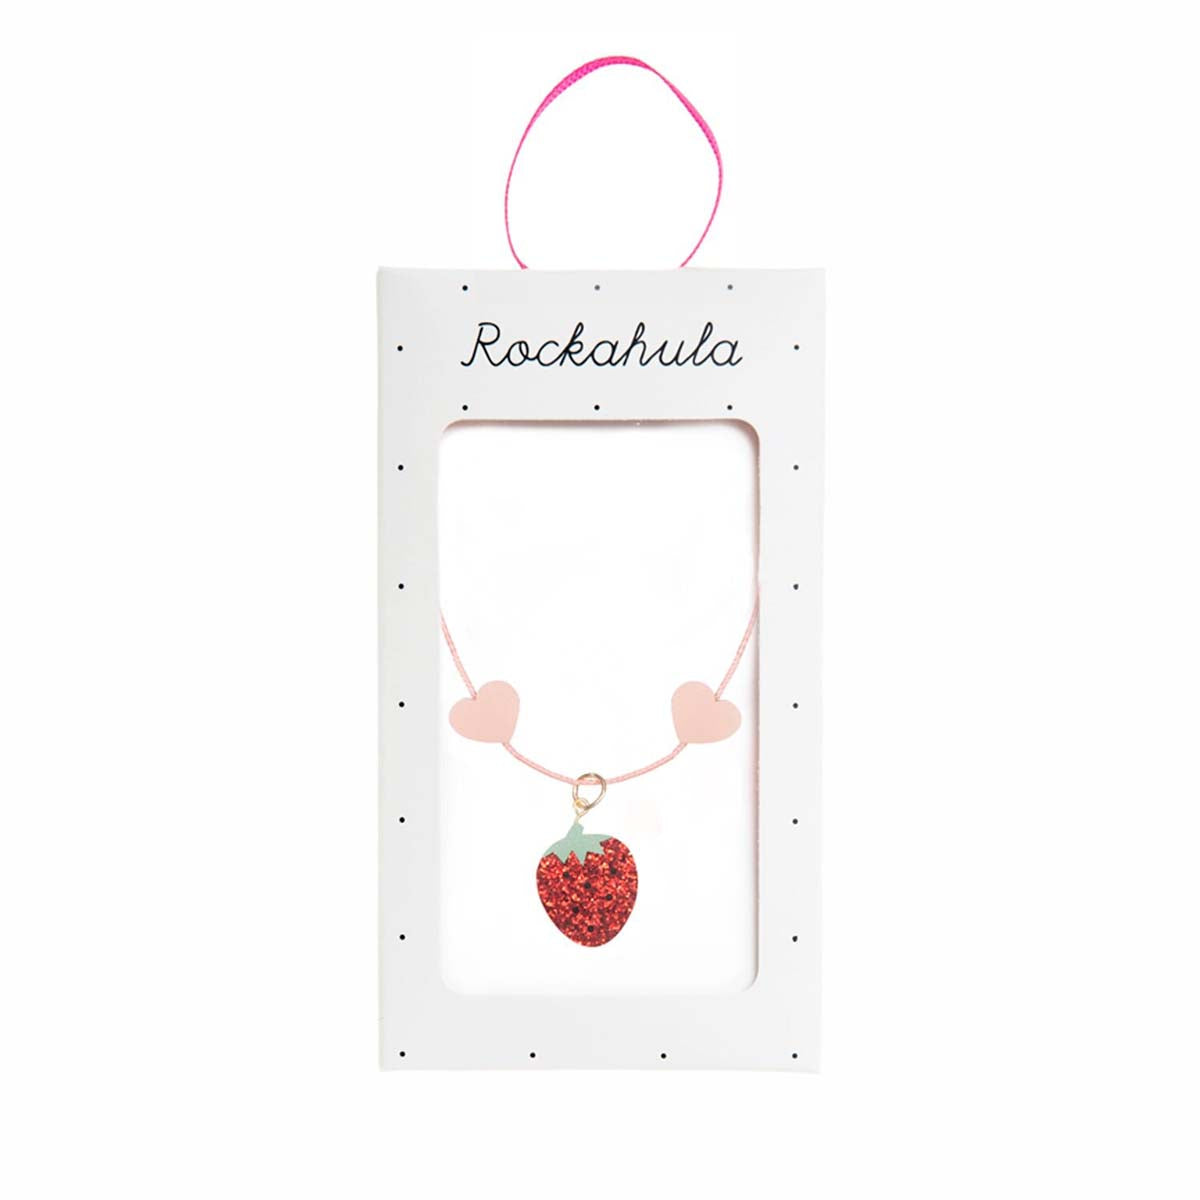 Het perfecte sieraad voor jouw mini: de strawberry fair ketting van Rockahula. Versierd met een glitter aardbei en roze hartjes. Roze koordketting met verstelbare sluiting. Geschikt vanaf 3 jaar. VanZus